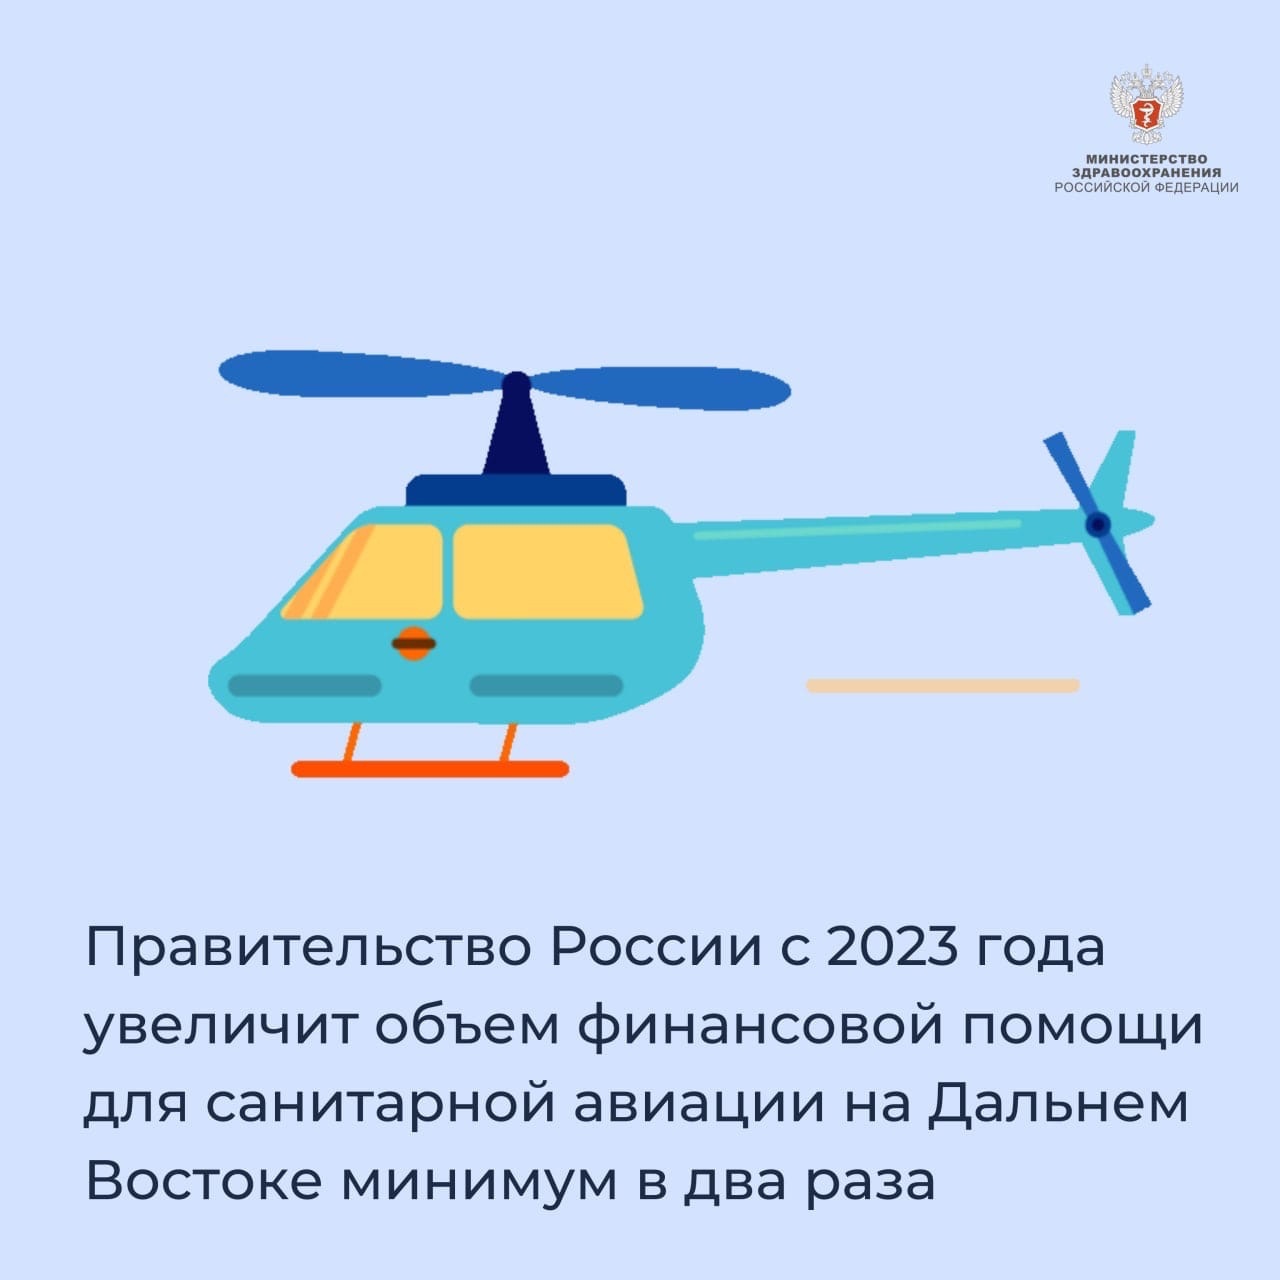 Правительство России с 2023 года увеличит объем финансовой помощи для санитарной авиации на Дальнем Востоке минимум в два раза